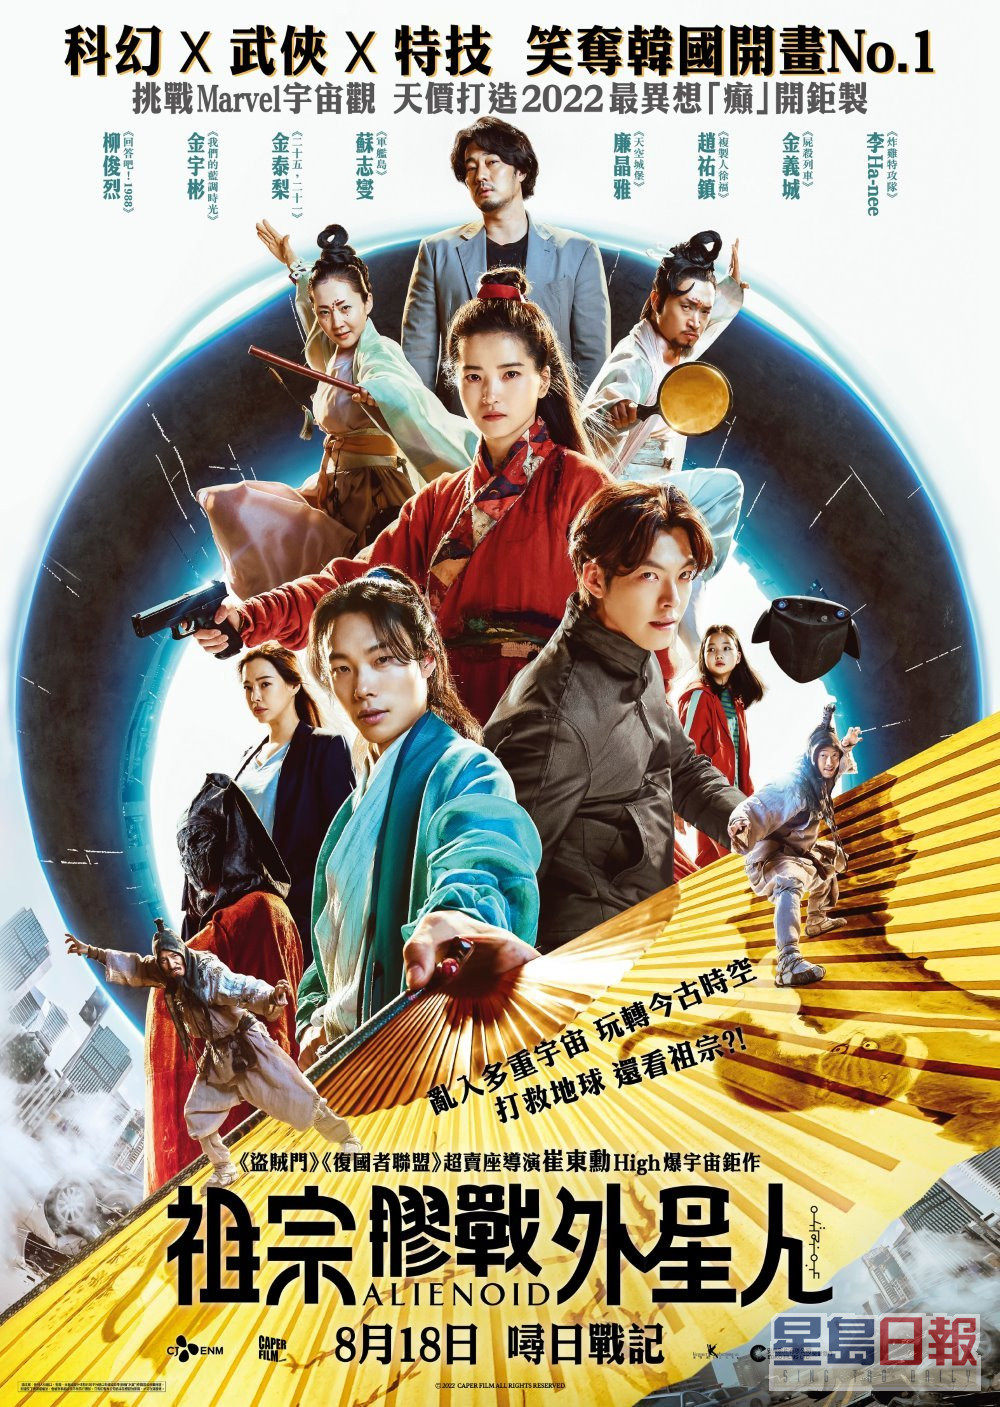 韓片《祖宗膠戰外星人》將於本月18日在香港上映。